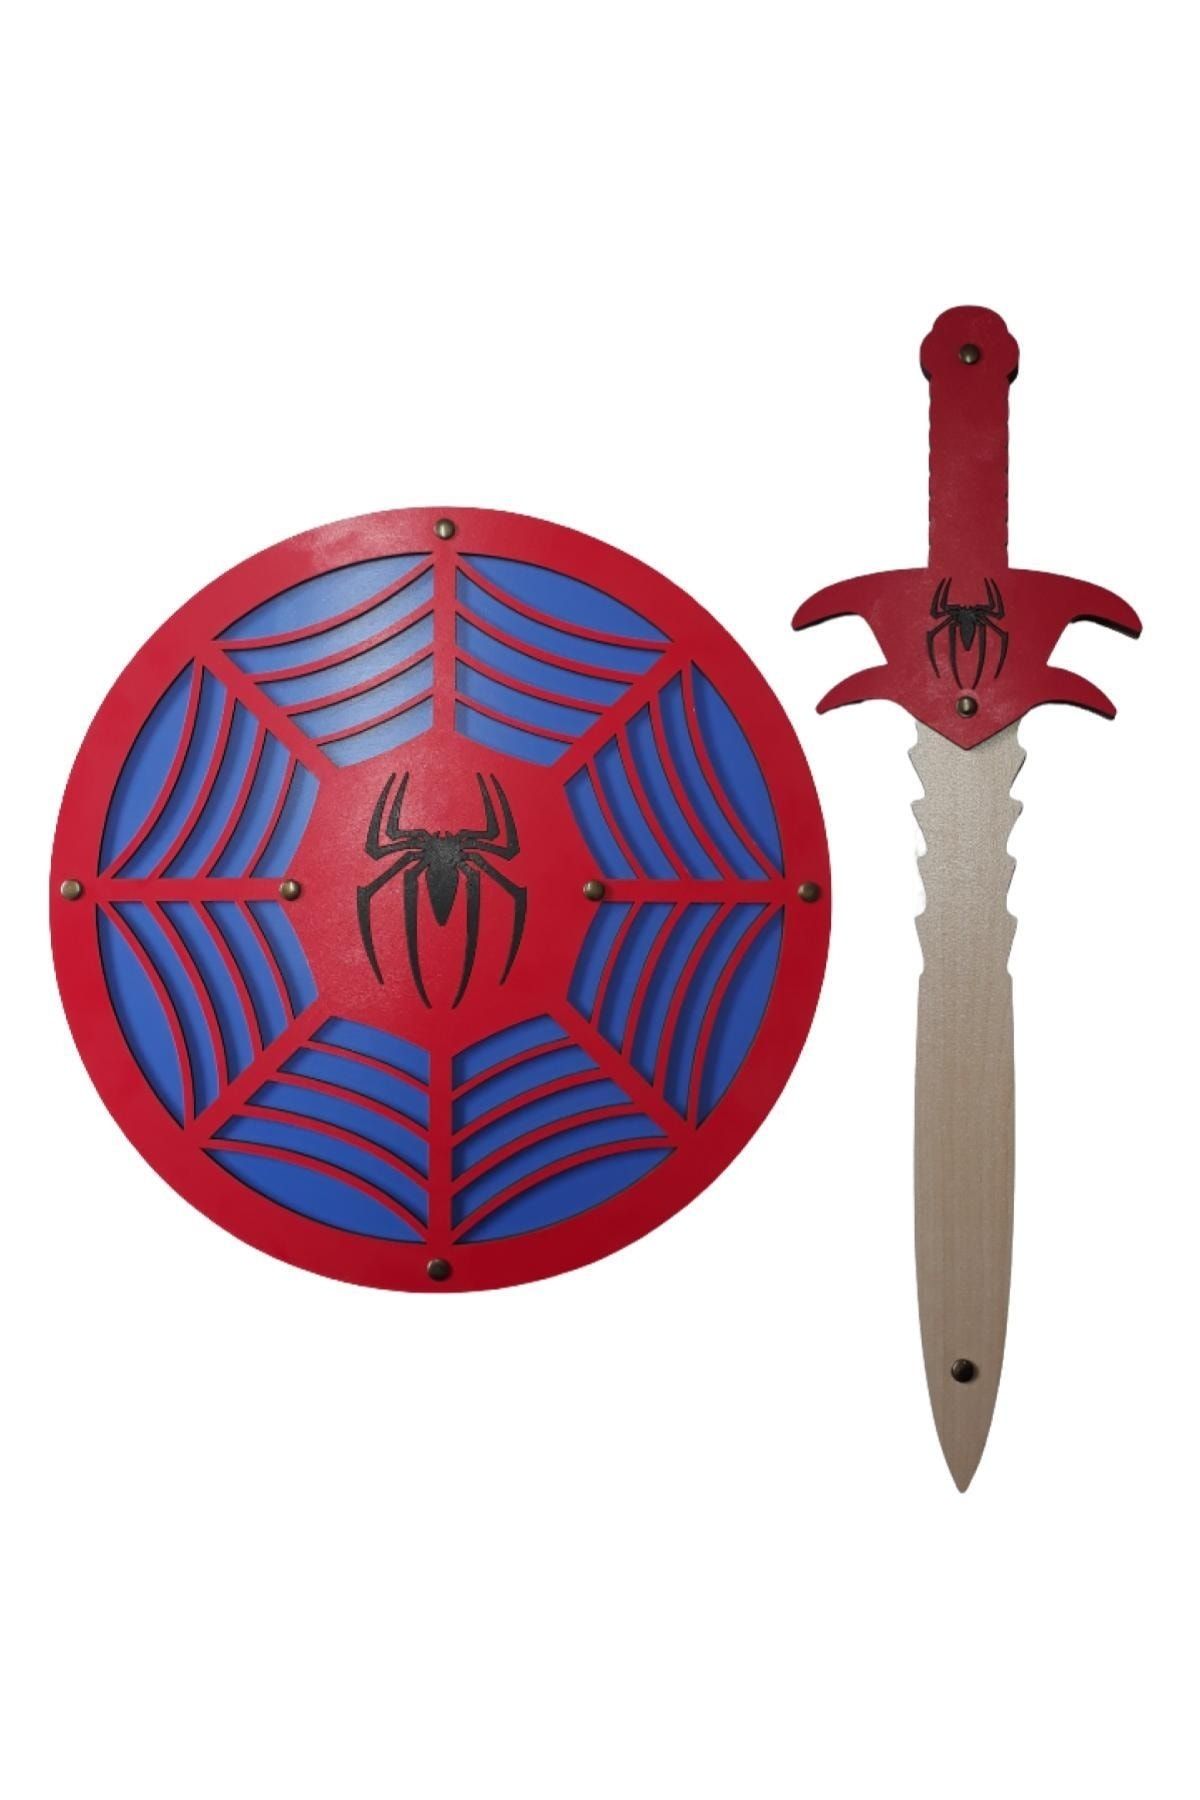 Ahtek Ahşap Oyuncak Seti 2’li, Spider-man Örümcek Adam Kalkanı Ve Kılıcı